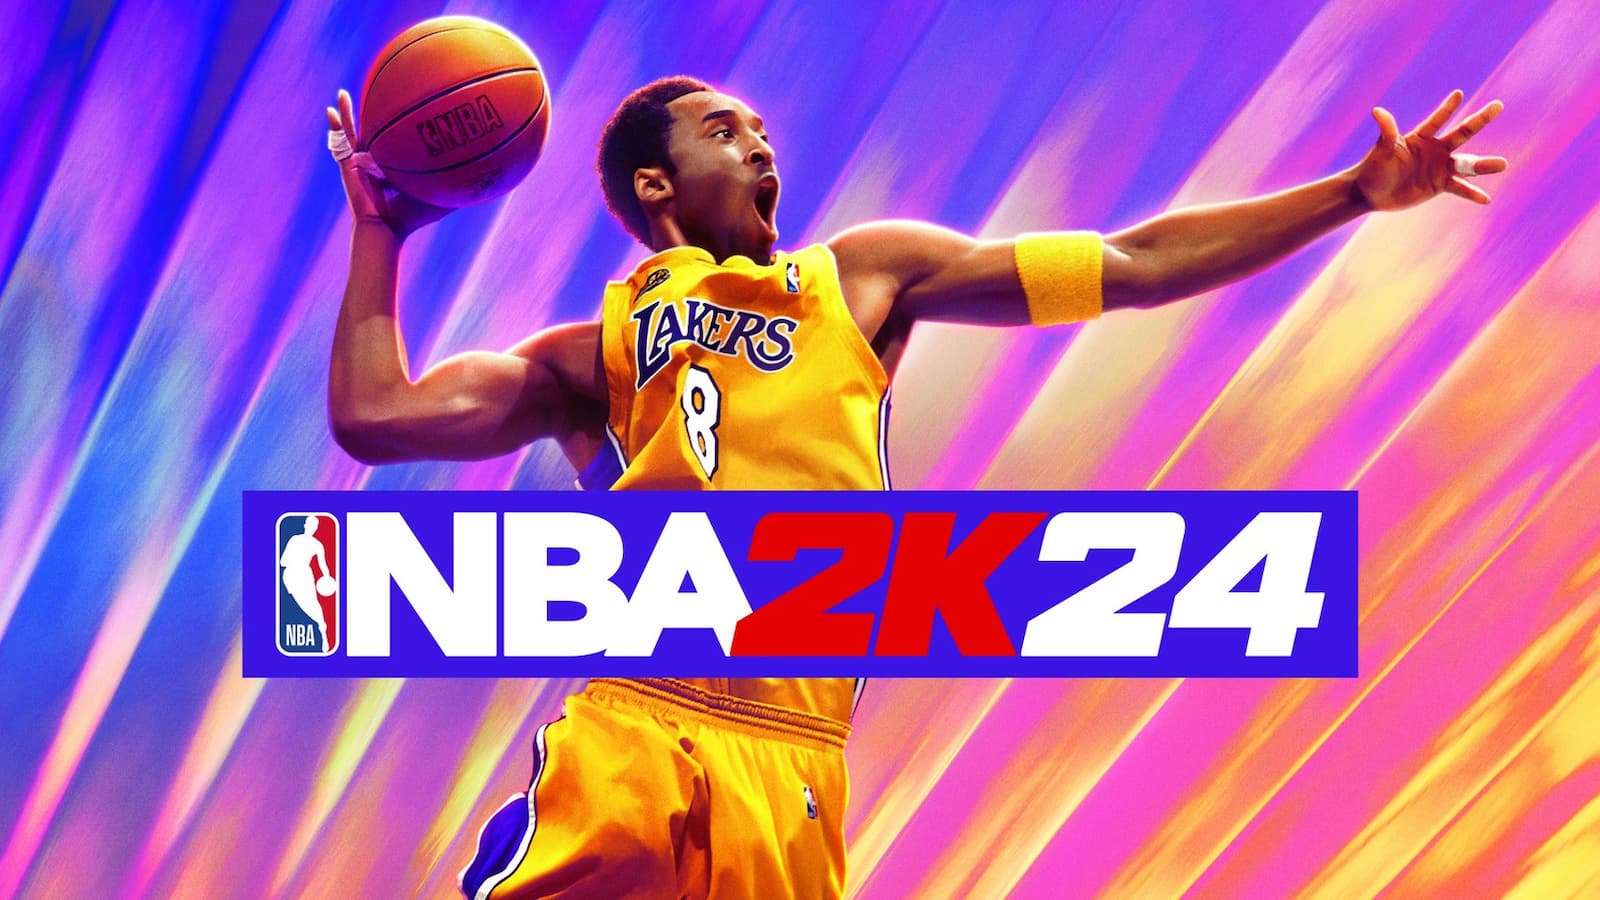 Kobe Bryant on NBA 2K24 cover